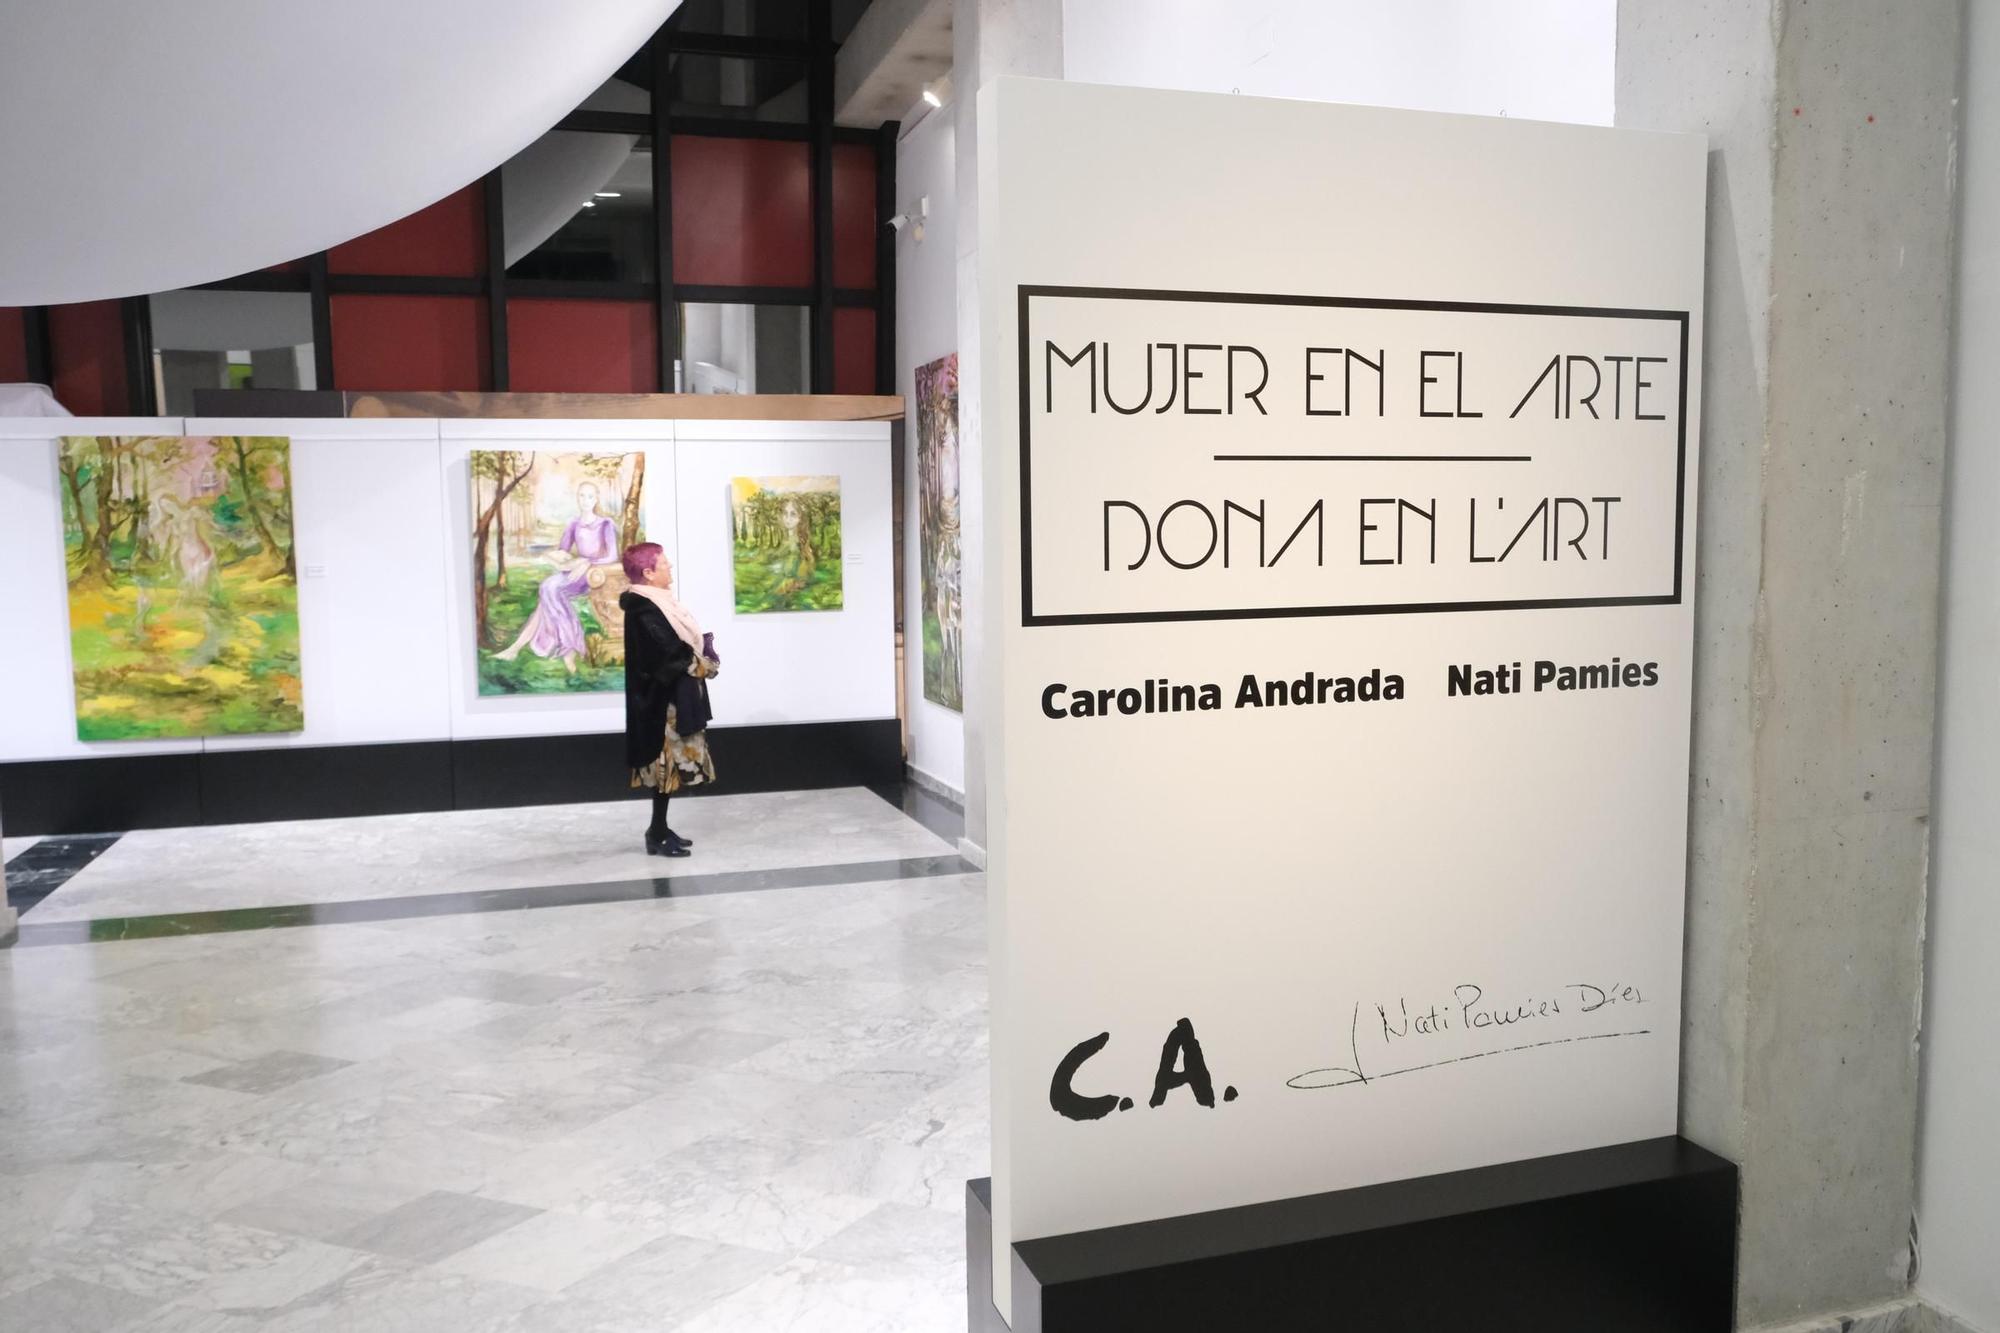 El realismo de Nati Pamies y el estilo onírico de Carolina Andrada, en la exposición "Mujer en el Arte" en Crevillent